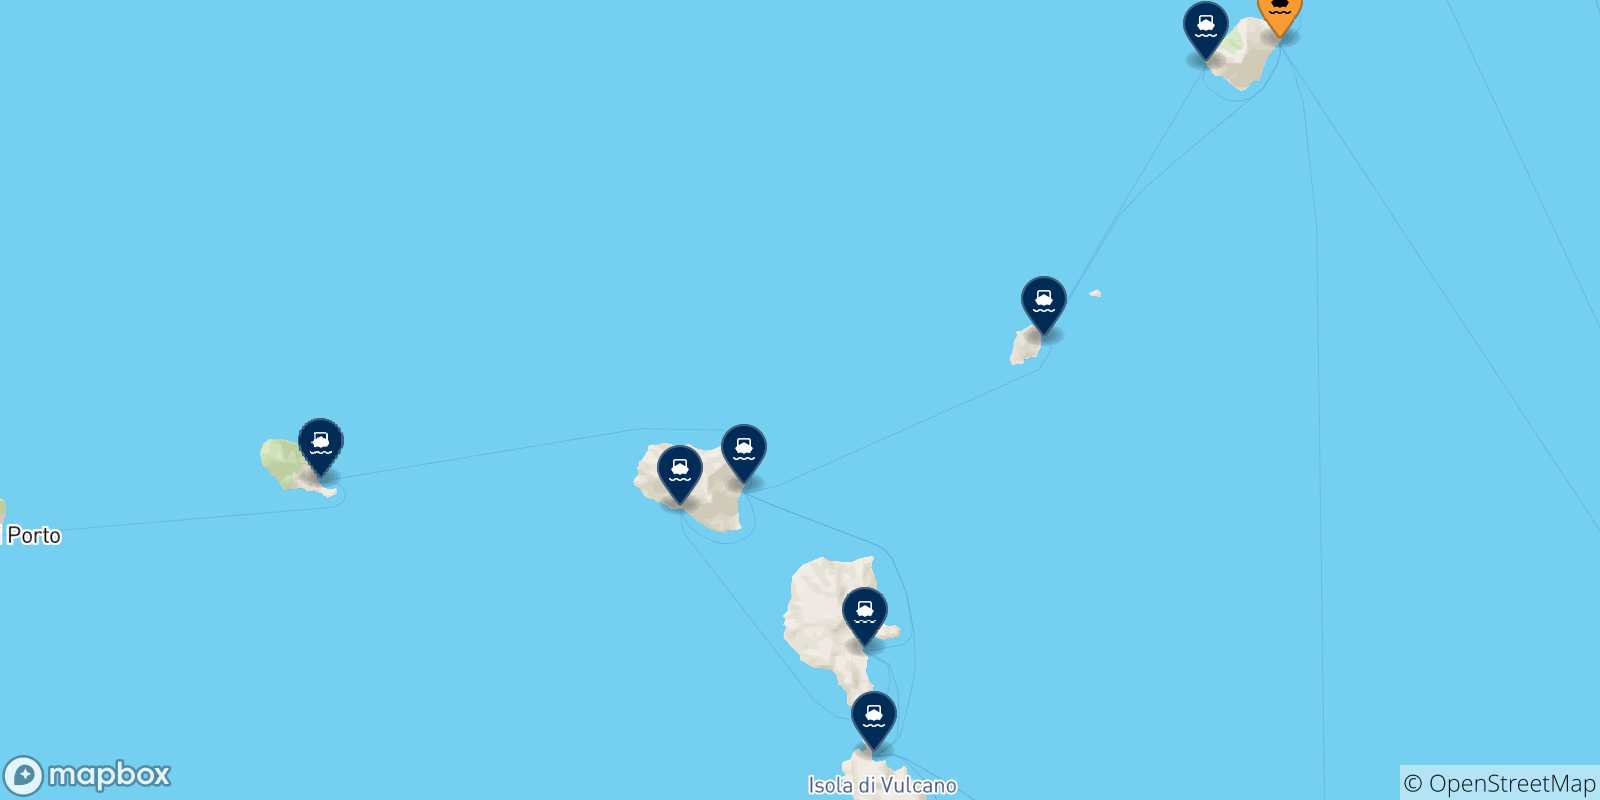 Mappa delle possibili rotte tra Stromboli e le Isole Eolie